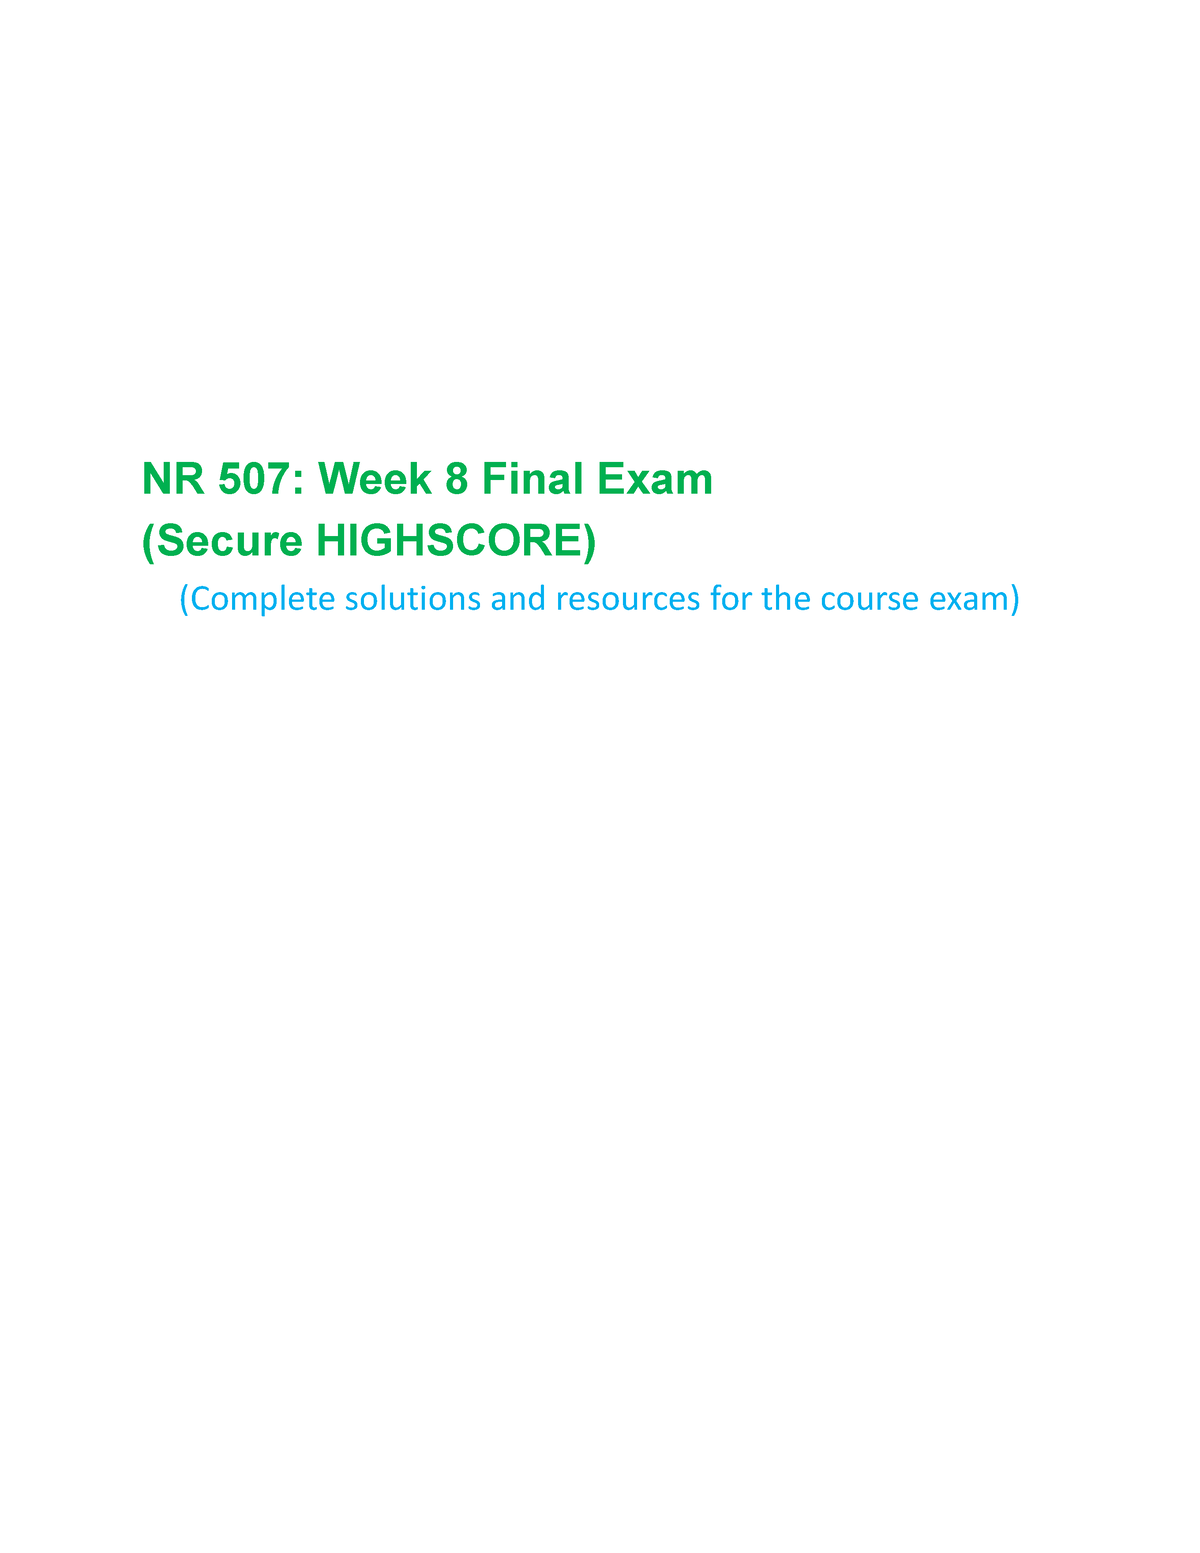 NR 503 Week 8 Final Quiz (LATEST) 100% Correct Answers - Nursing